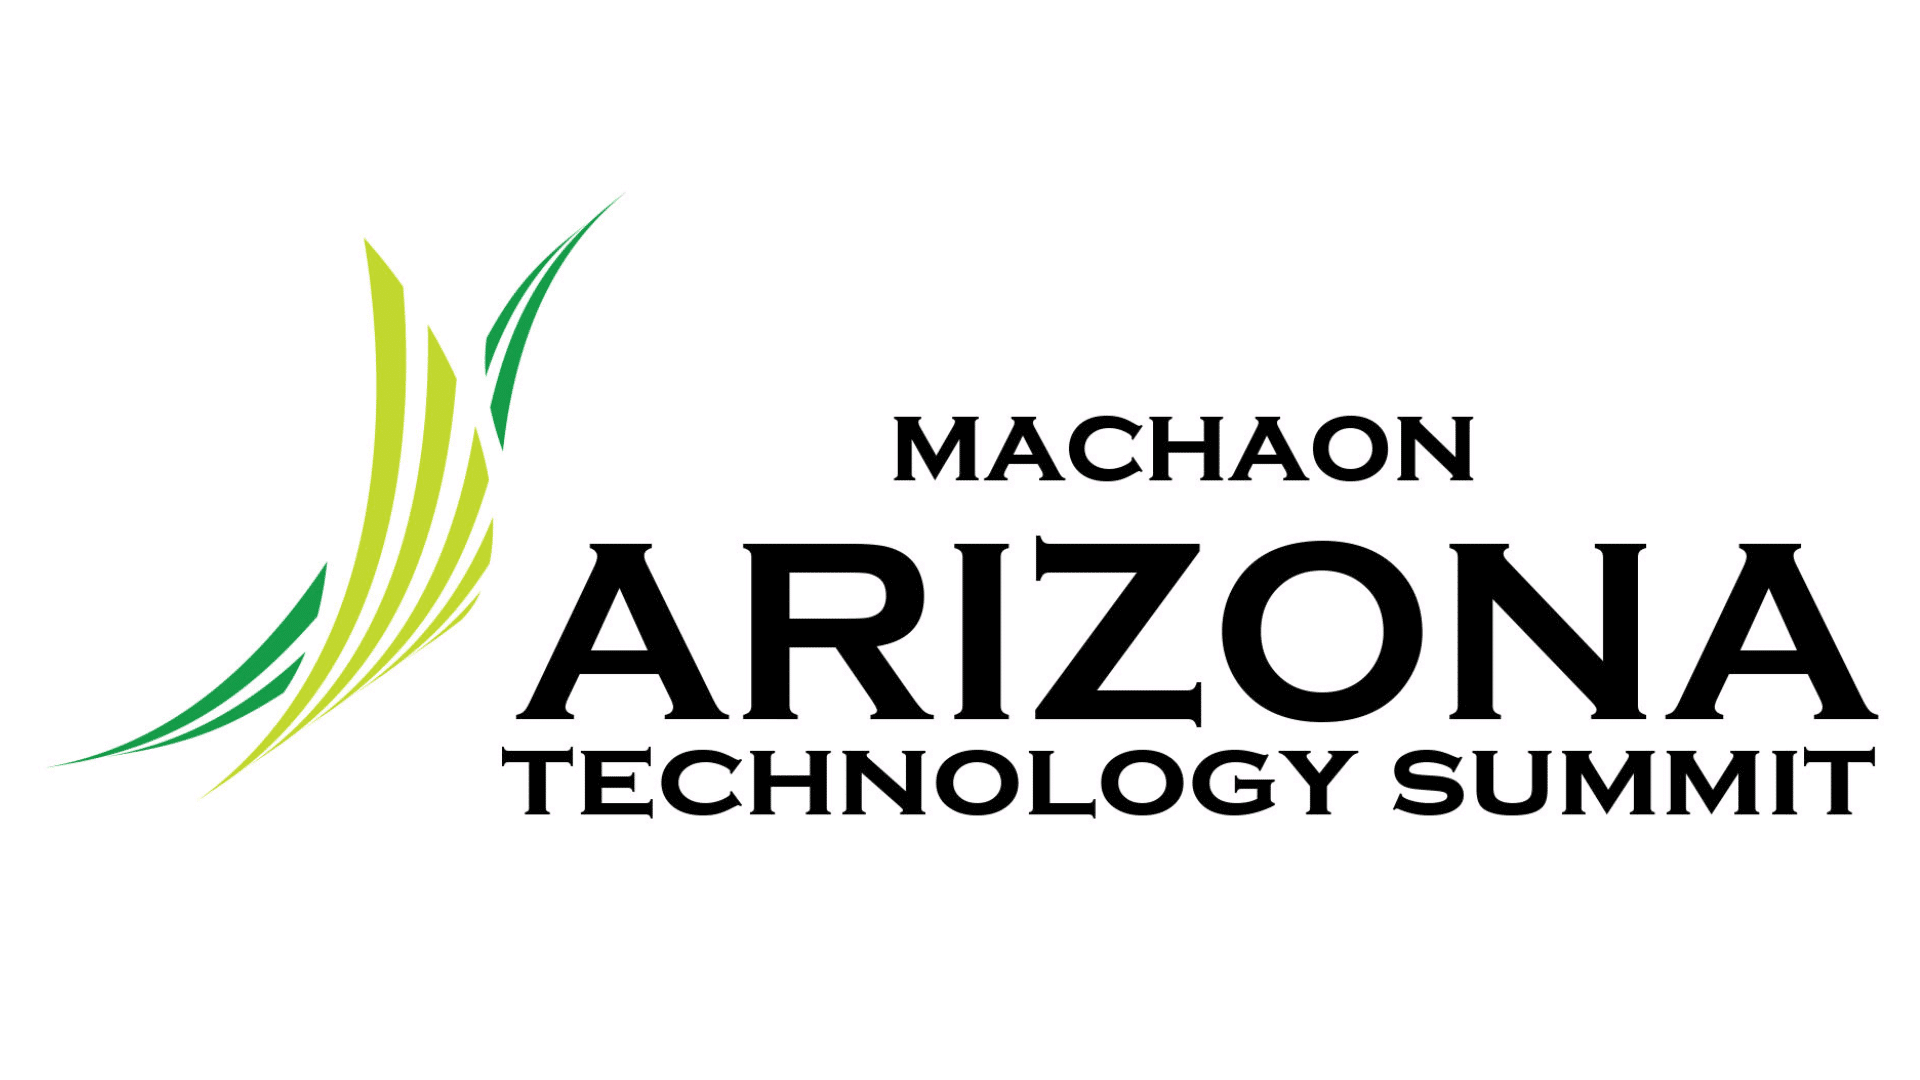 Arizona Technology Summit